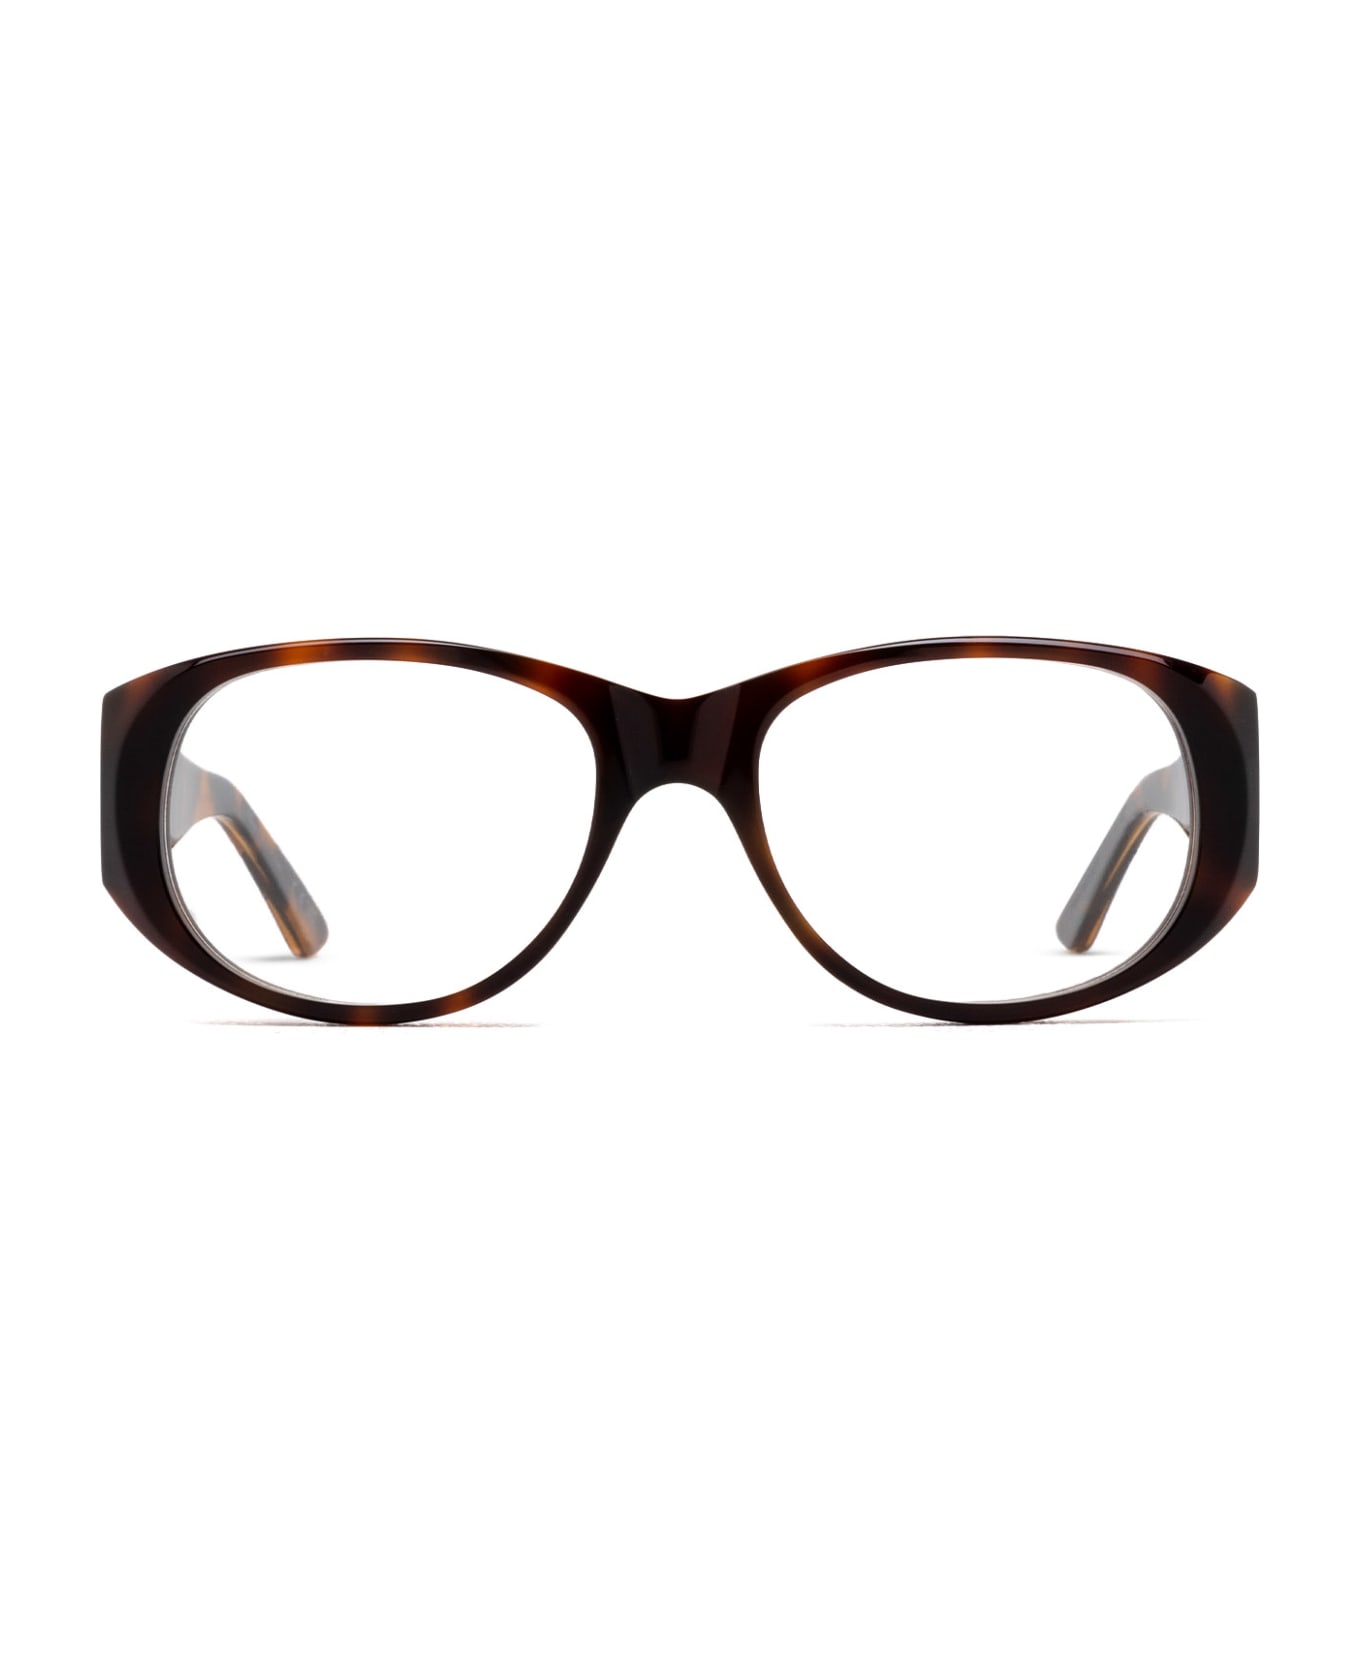 Marni Eyewear Orinoco Optical Havana Glasses - Havana アイウェア